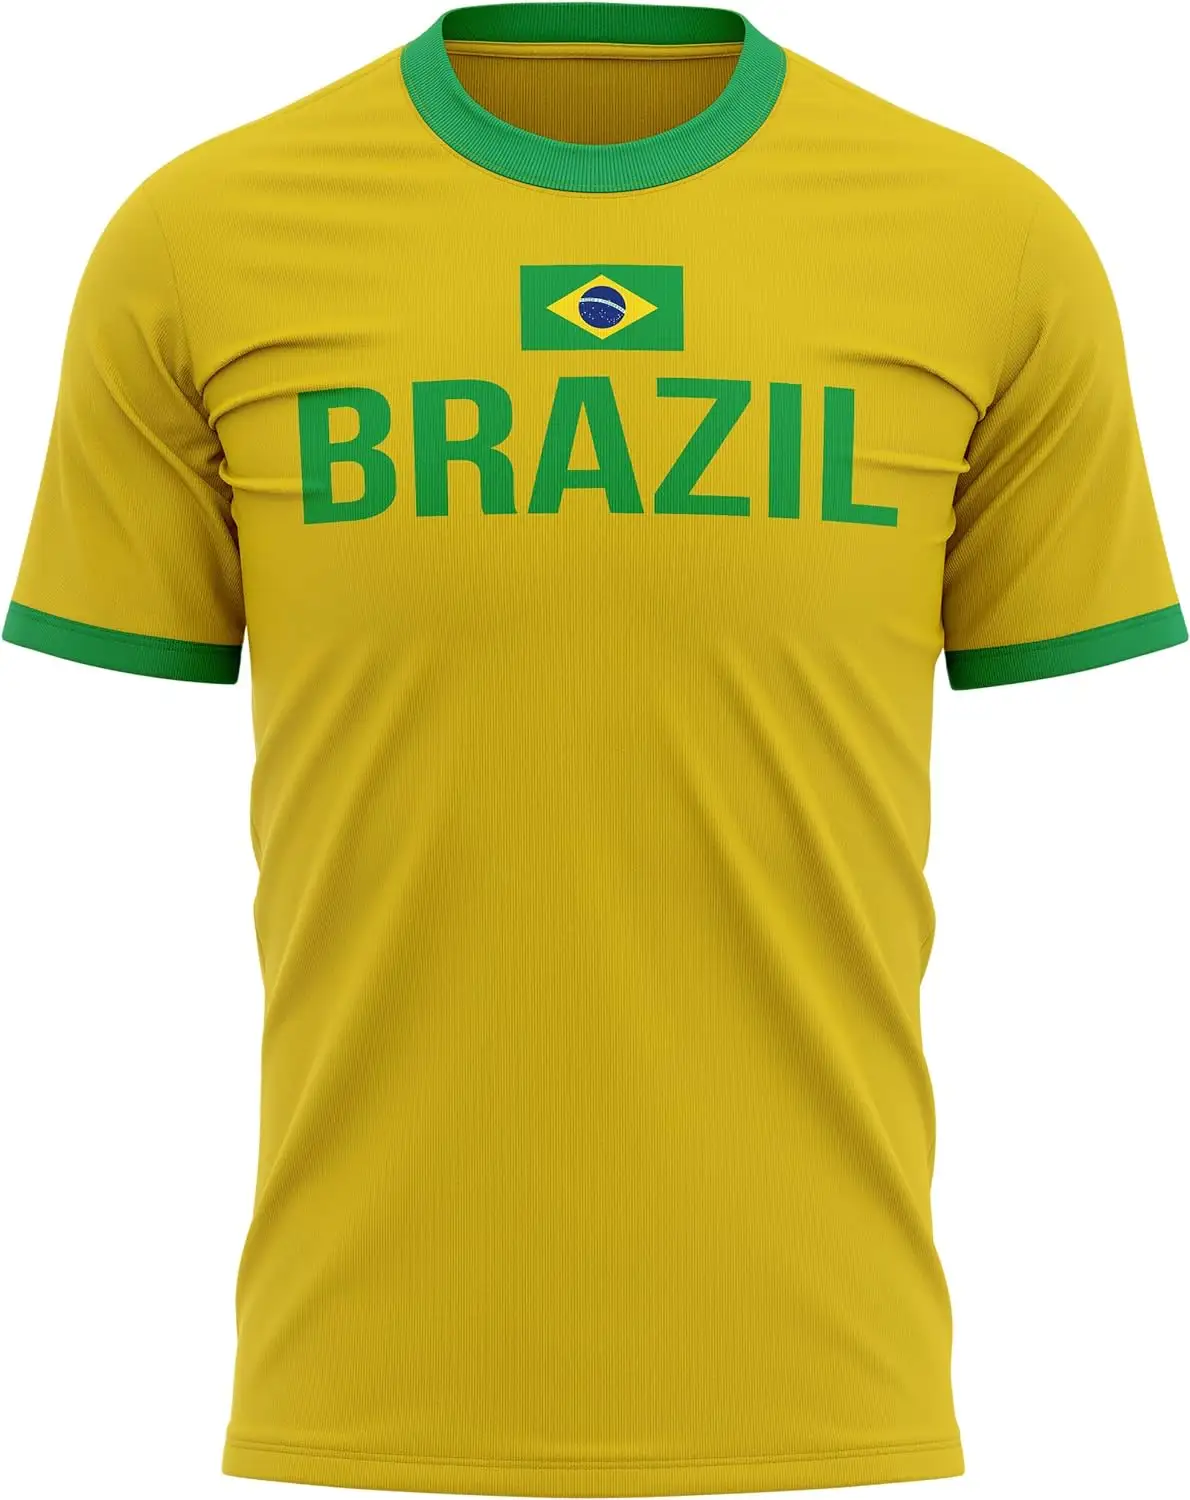 เสื้อยืดบุรุษธงบราซิล, สนับสนุนฟุตบอลบราซิล, ไอเดียของขวัญสําหรับแฟนบราซิล, ธงชาติบราซิลด้านบน